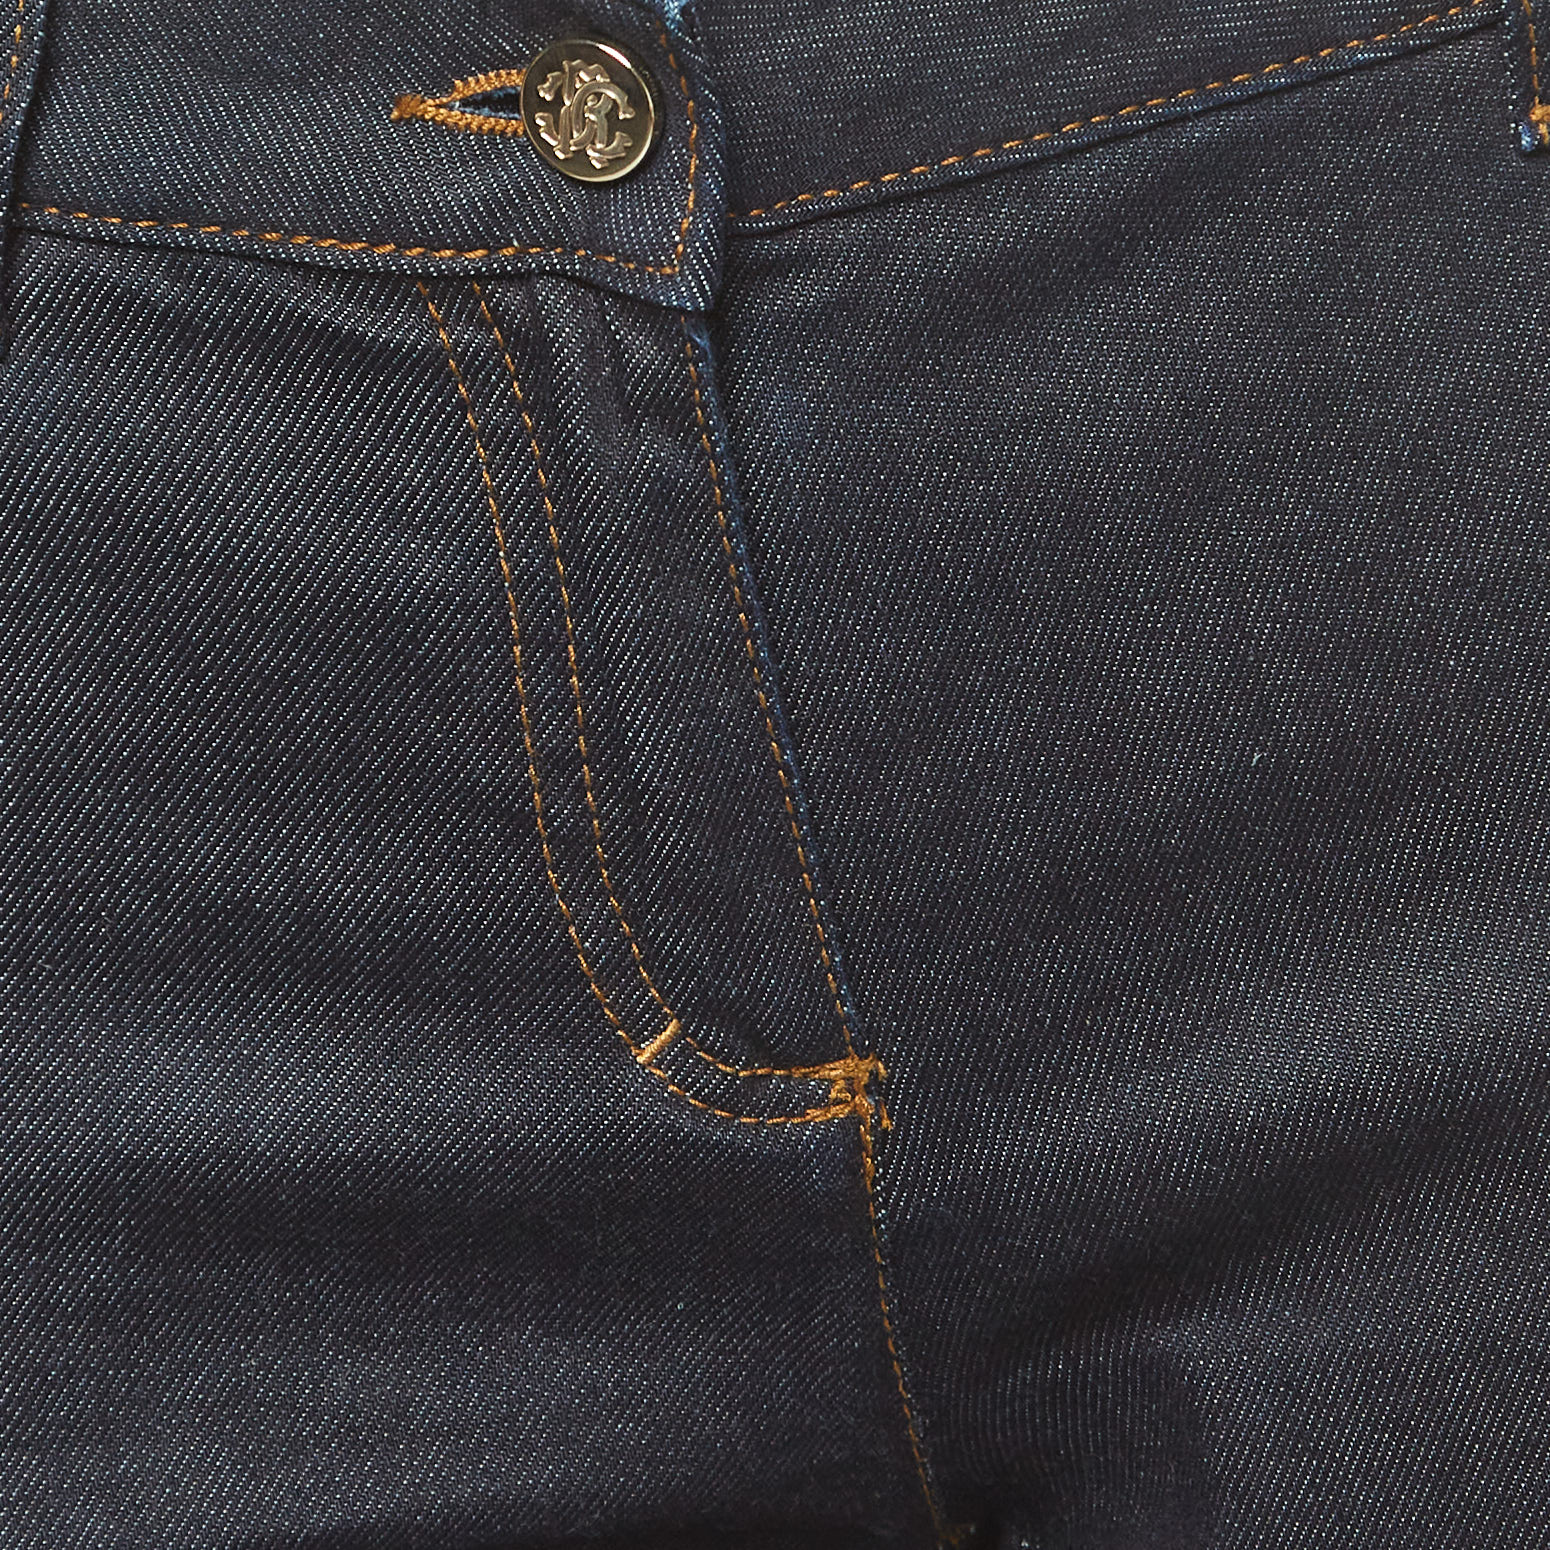 Roberto Cavalli Navy Blue Denim Flared Jeans M Waist 30